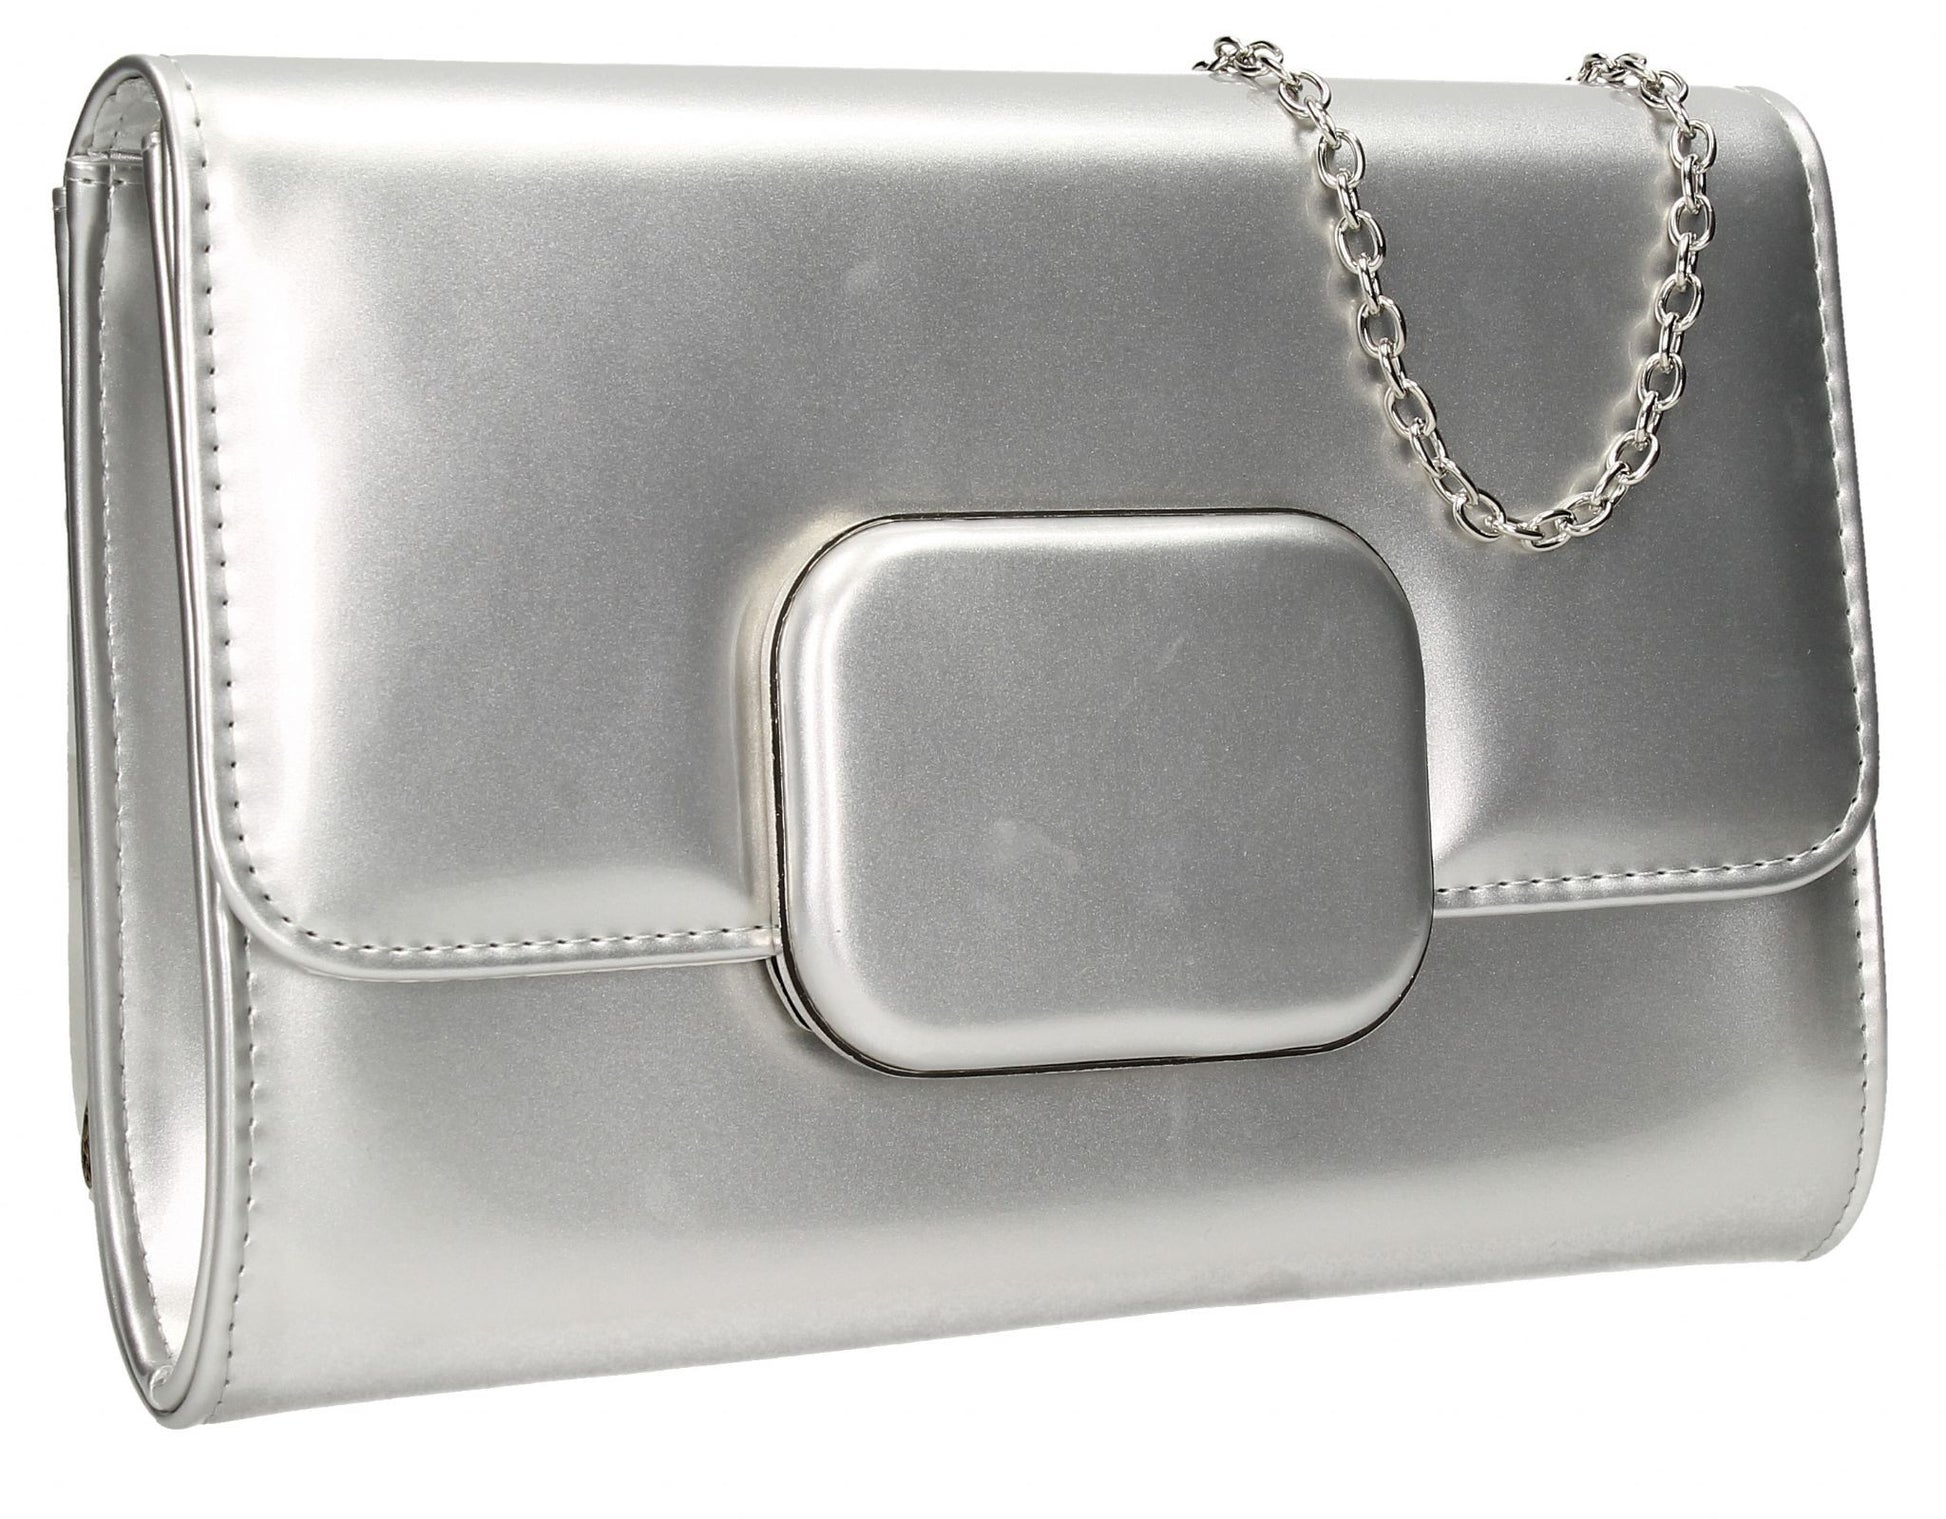 SWANKYSWANS Merci Clutch Bag Silver Cute Cheap Clutch Bag For Weddings School and Work